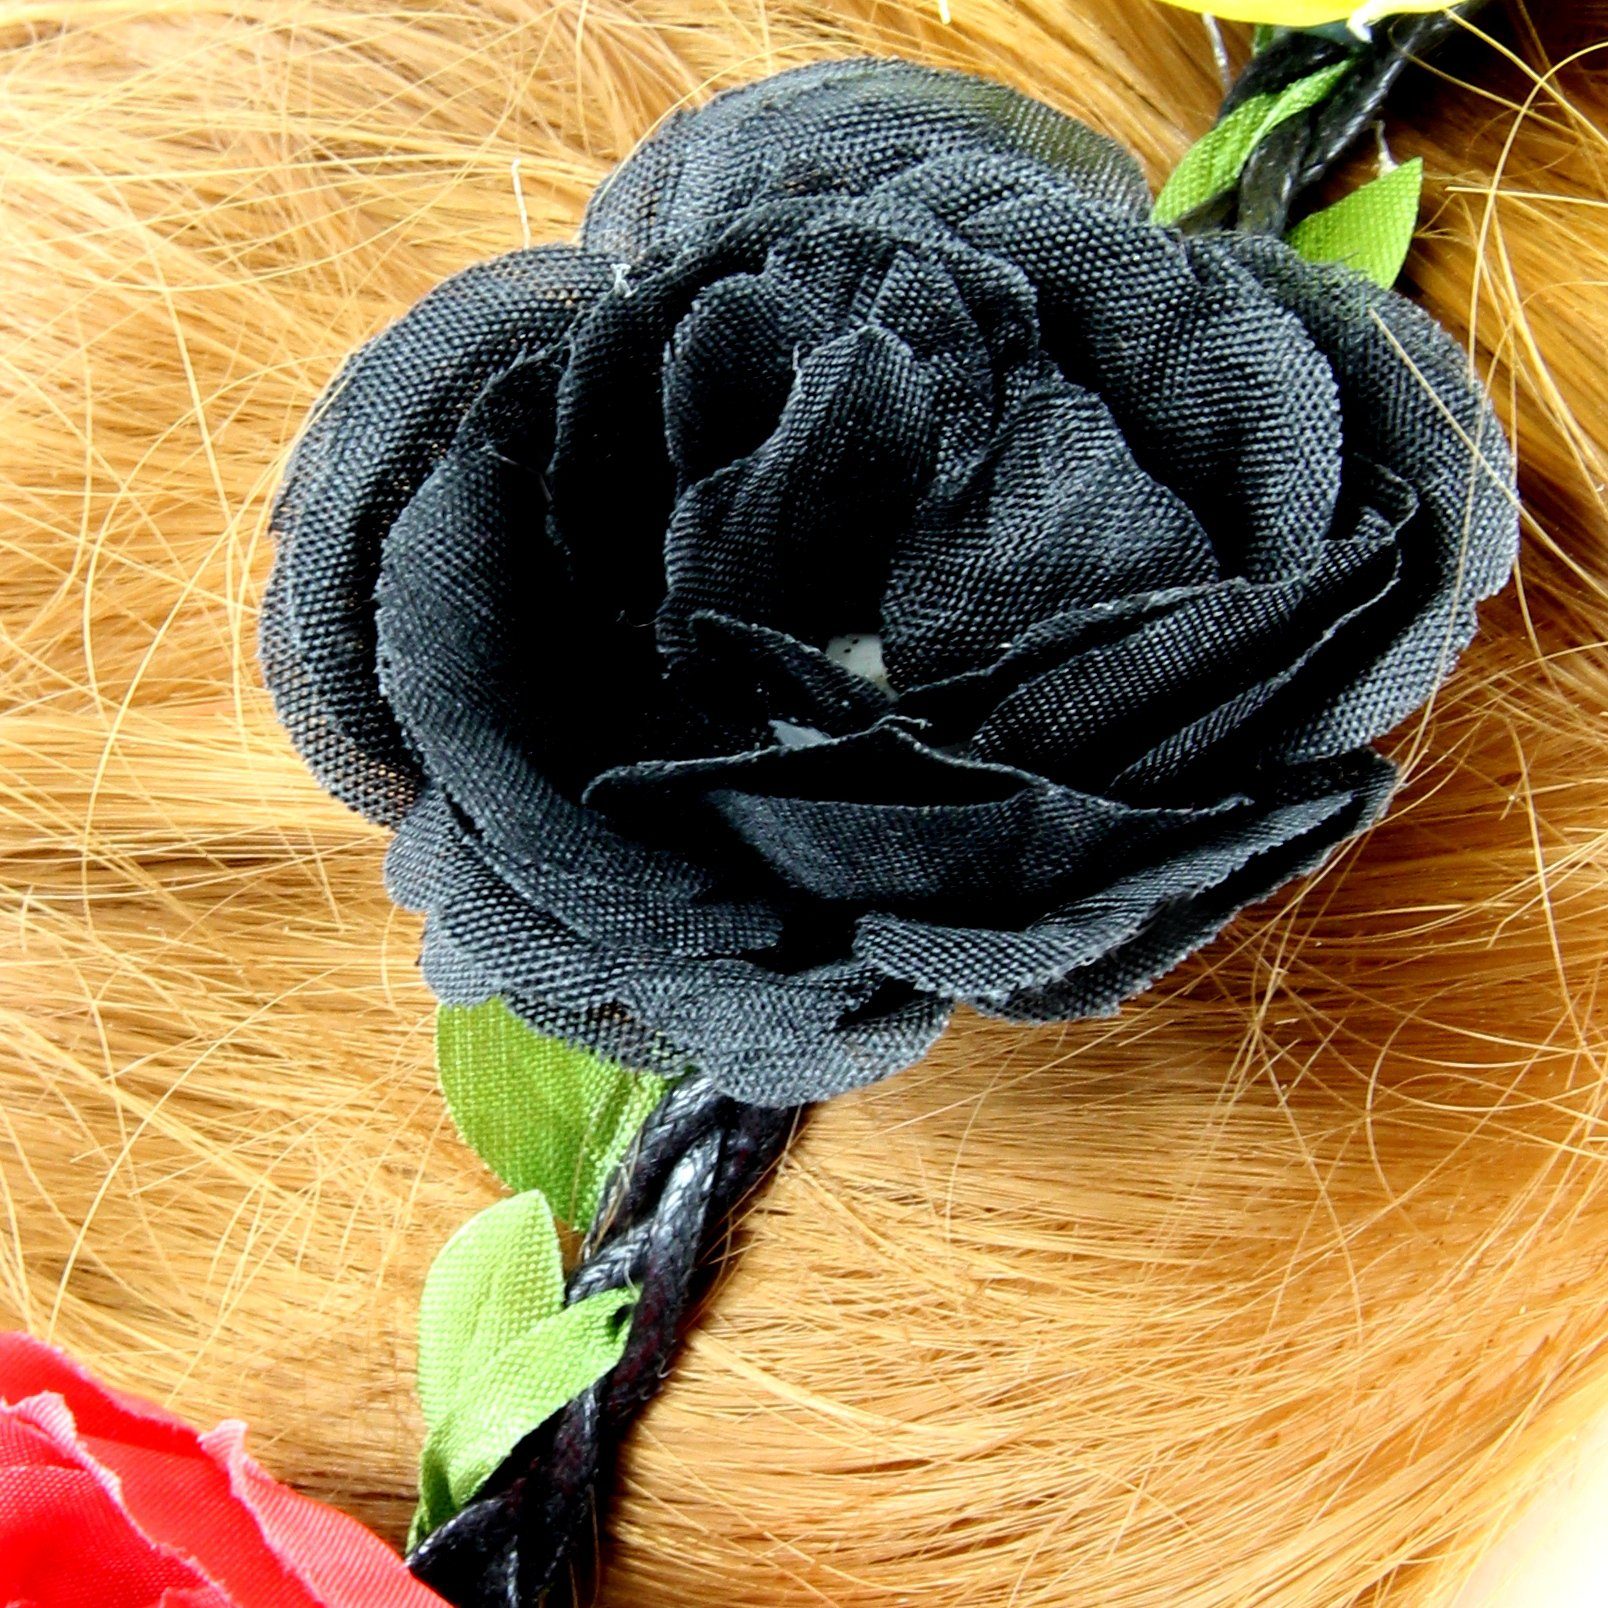 Deutschland ZADAWERK in - Fan-Accessoire, und gelb Haarschmuck, Blumen Belgien, 1-tlg., schwarz, Haarband rot